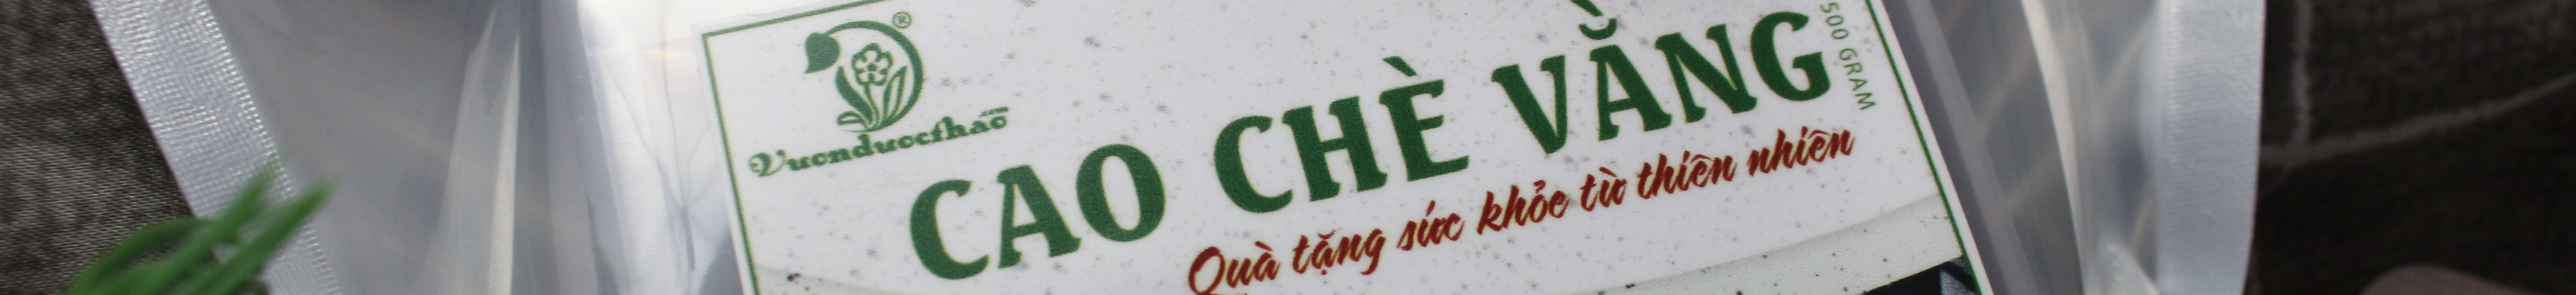 Chè vằng Vườn Dược Thảo's profile banner